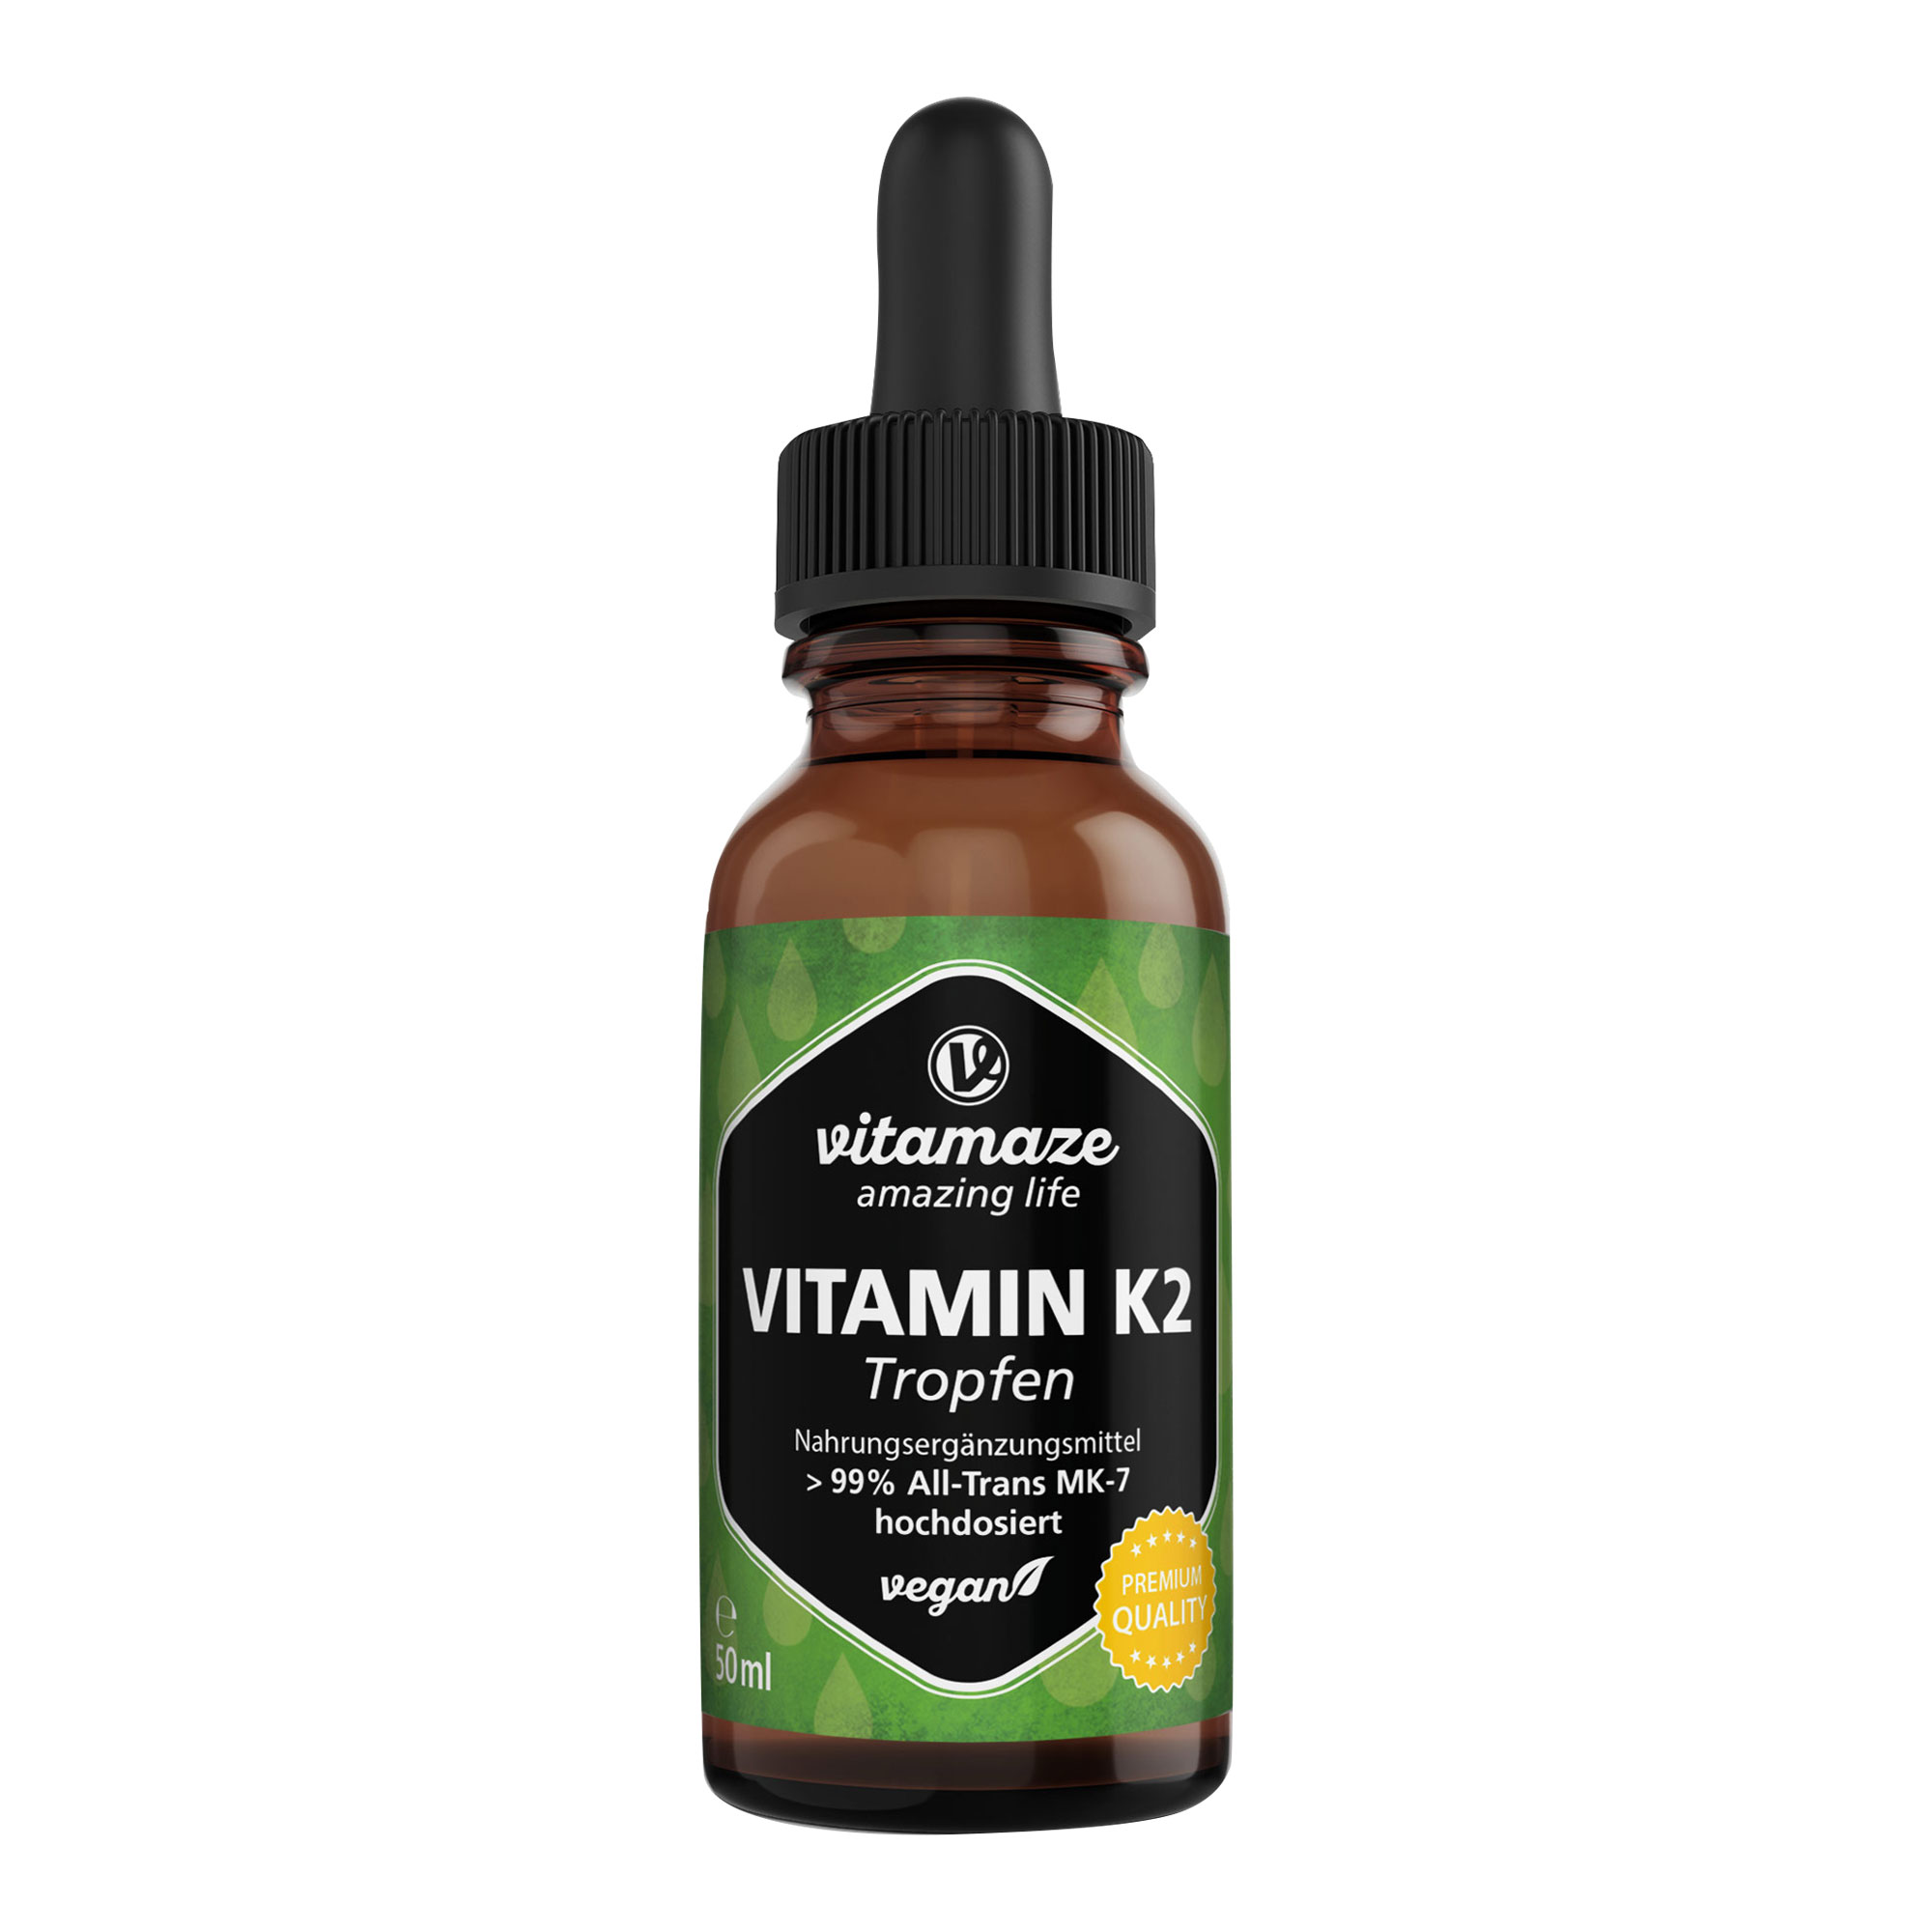 Nahrungsergänzungsmittel mit hochdosiertem Vitamin K2 in flüssiger Form.